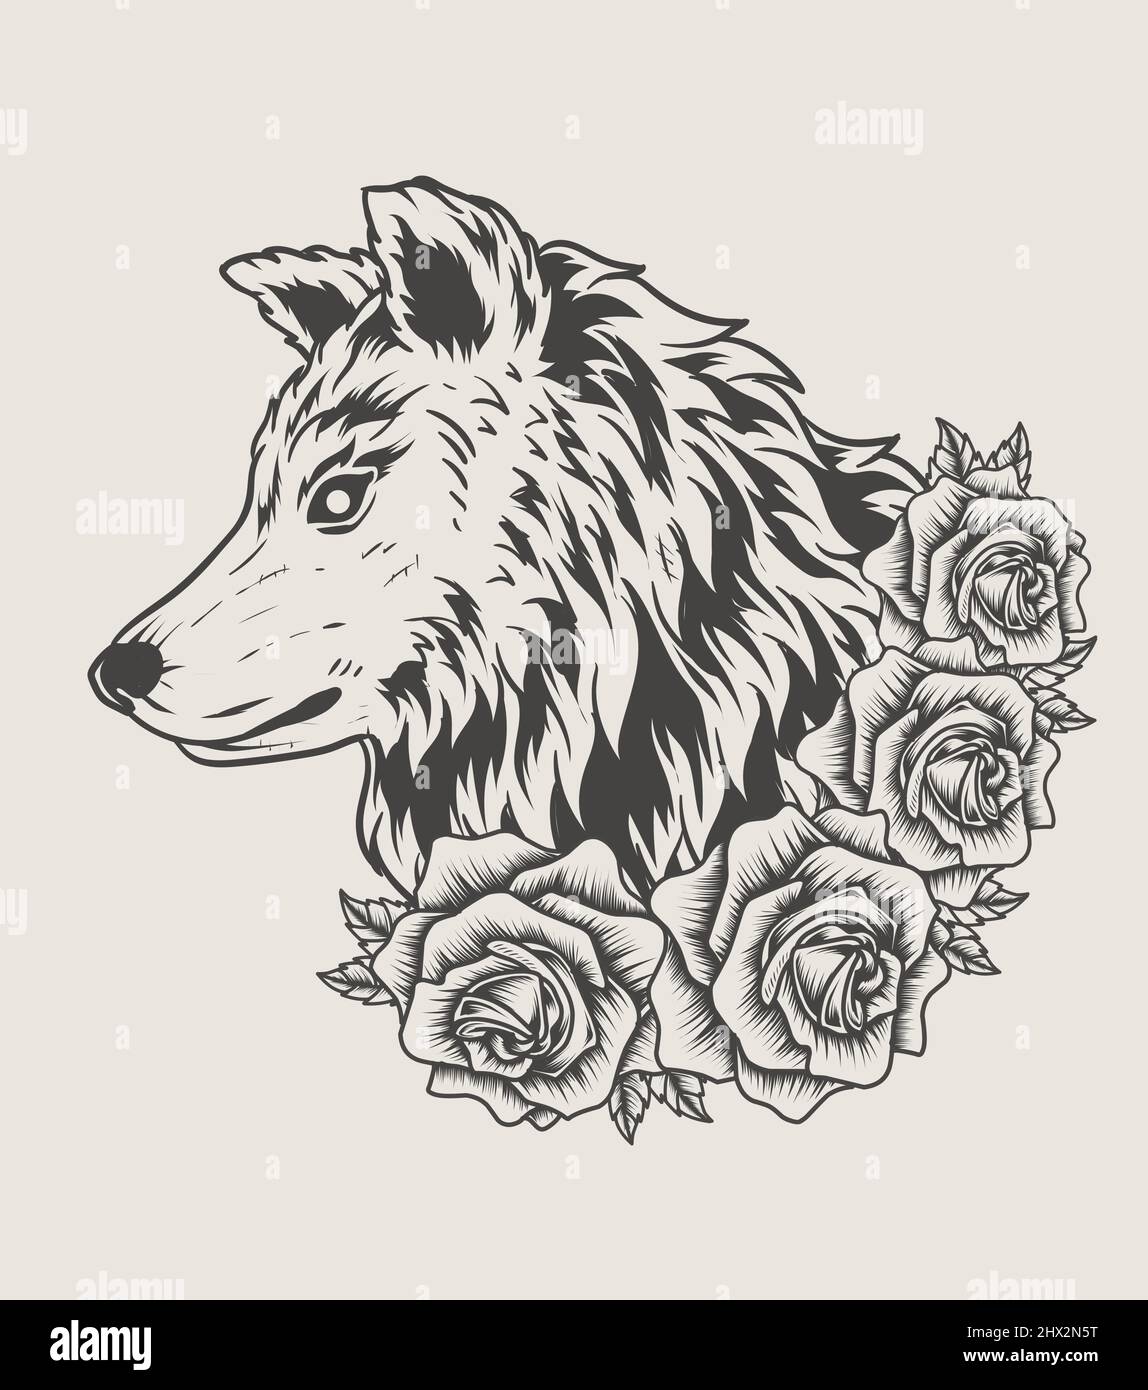 Illustration Wolf Kopf Mit Rose Blume Monochromen Stil Stock Vektorgrafik Alamy